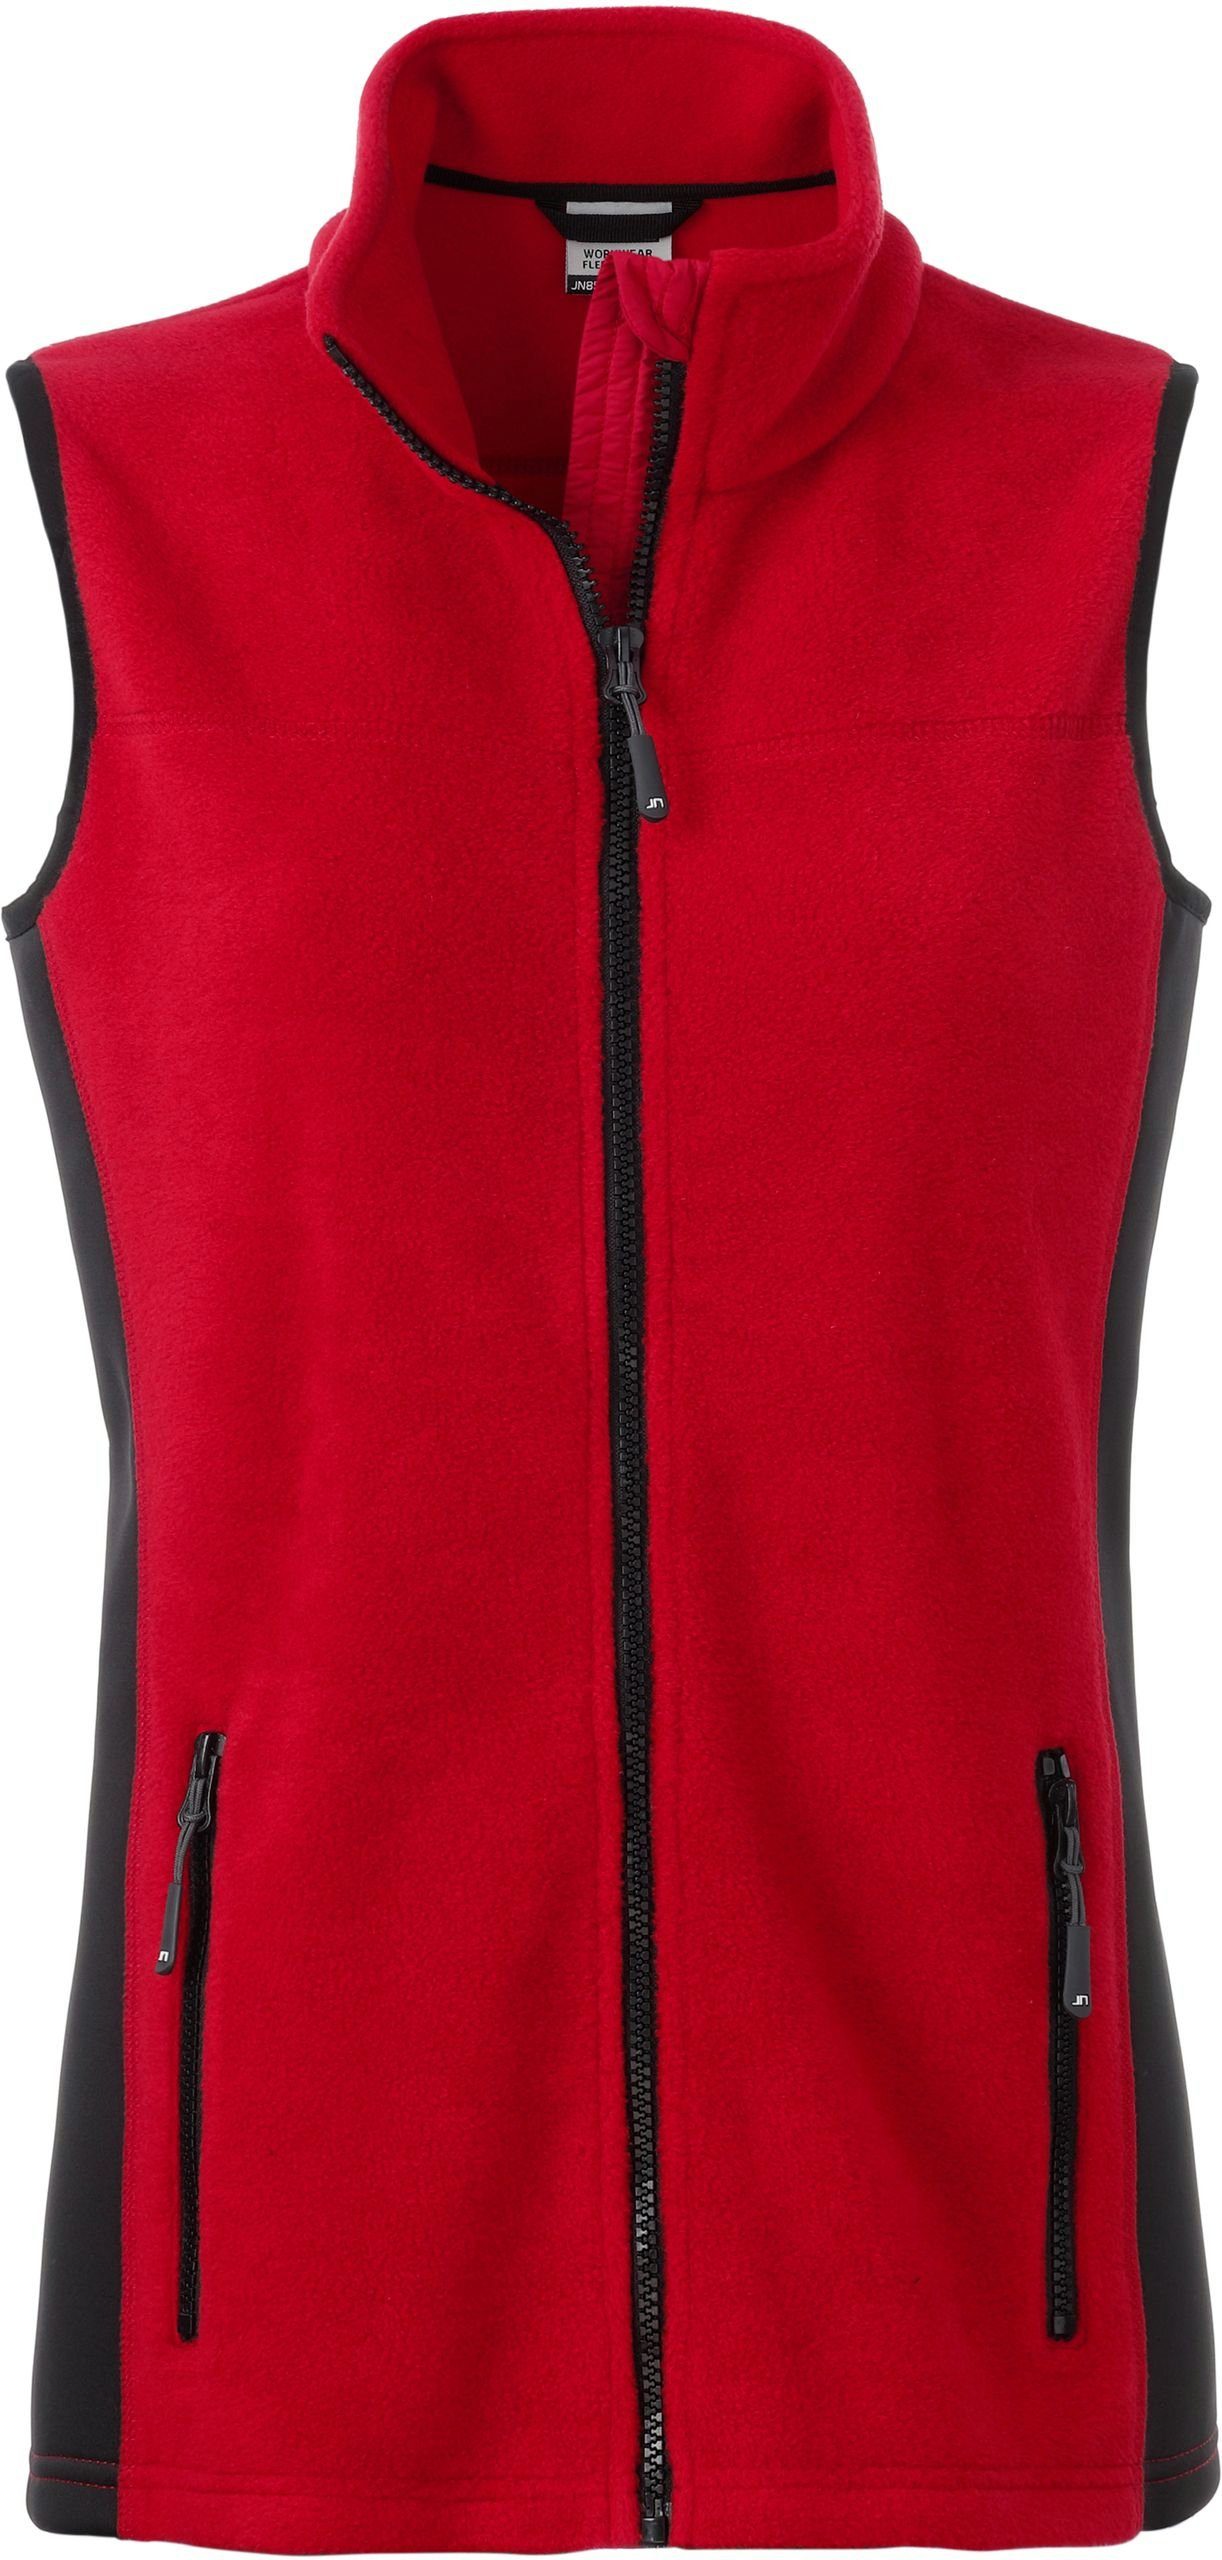 Nicholson Gilet Workwear RED/BLACK Weste Fleece FaS50855 Fleeceweste James &